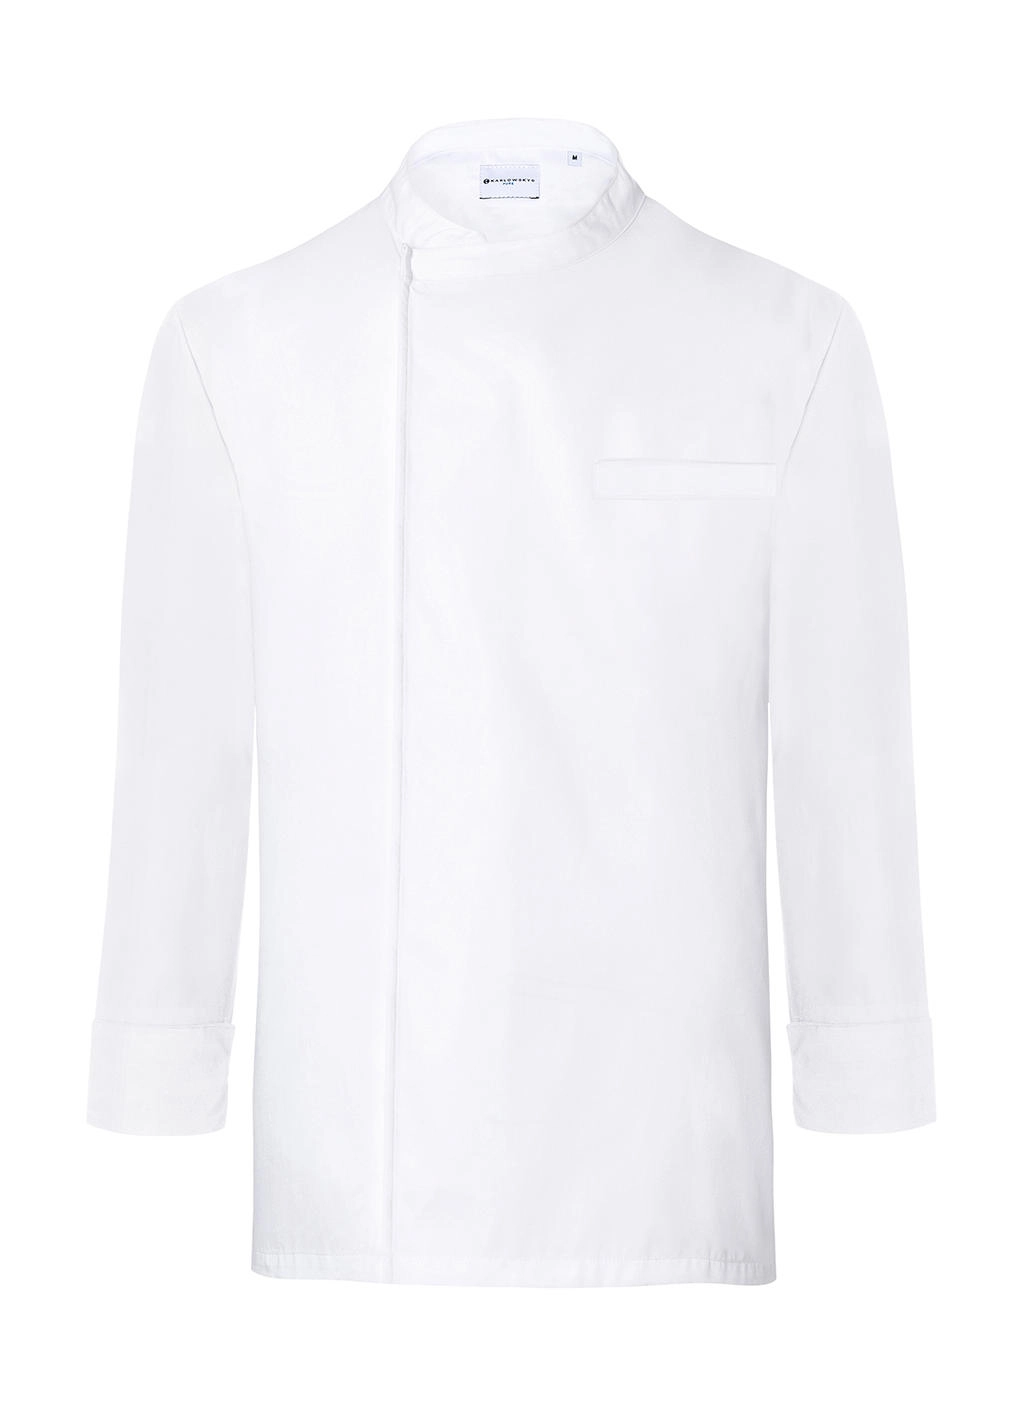 Chef`s Shirt Basic Long Sleeve zum Besticken und Bedrucken in der Farbe White mit Ihren Logo, Schriftzug oder Motiv.